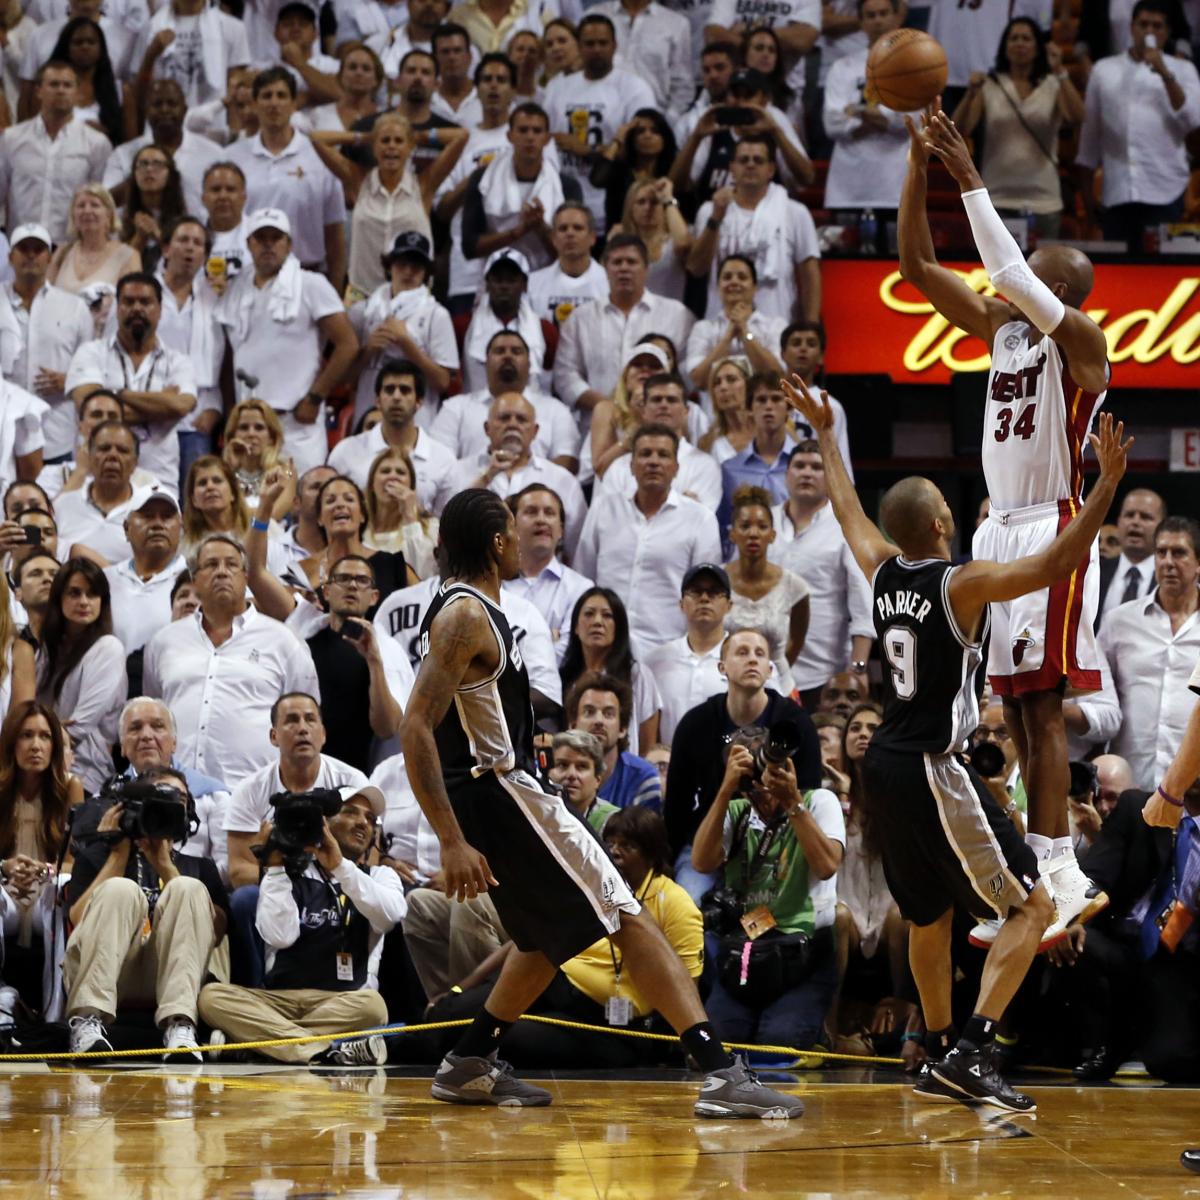 Heat vs Spurs NBA Finals Game 6: Live Score, Highlights and Analysis | Bleacher Report ...